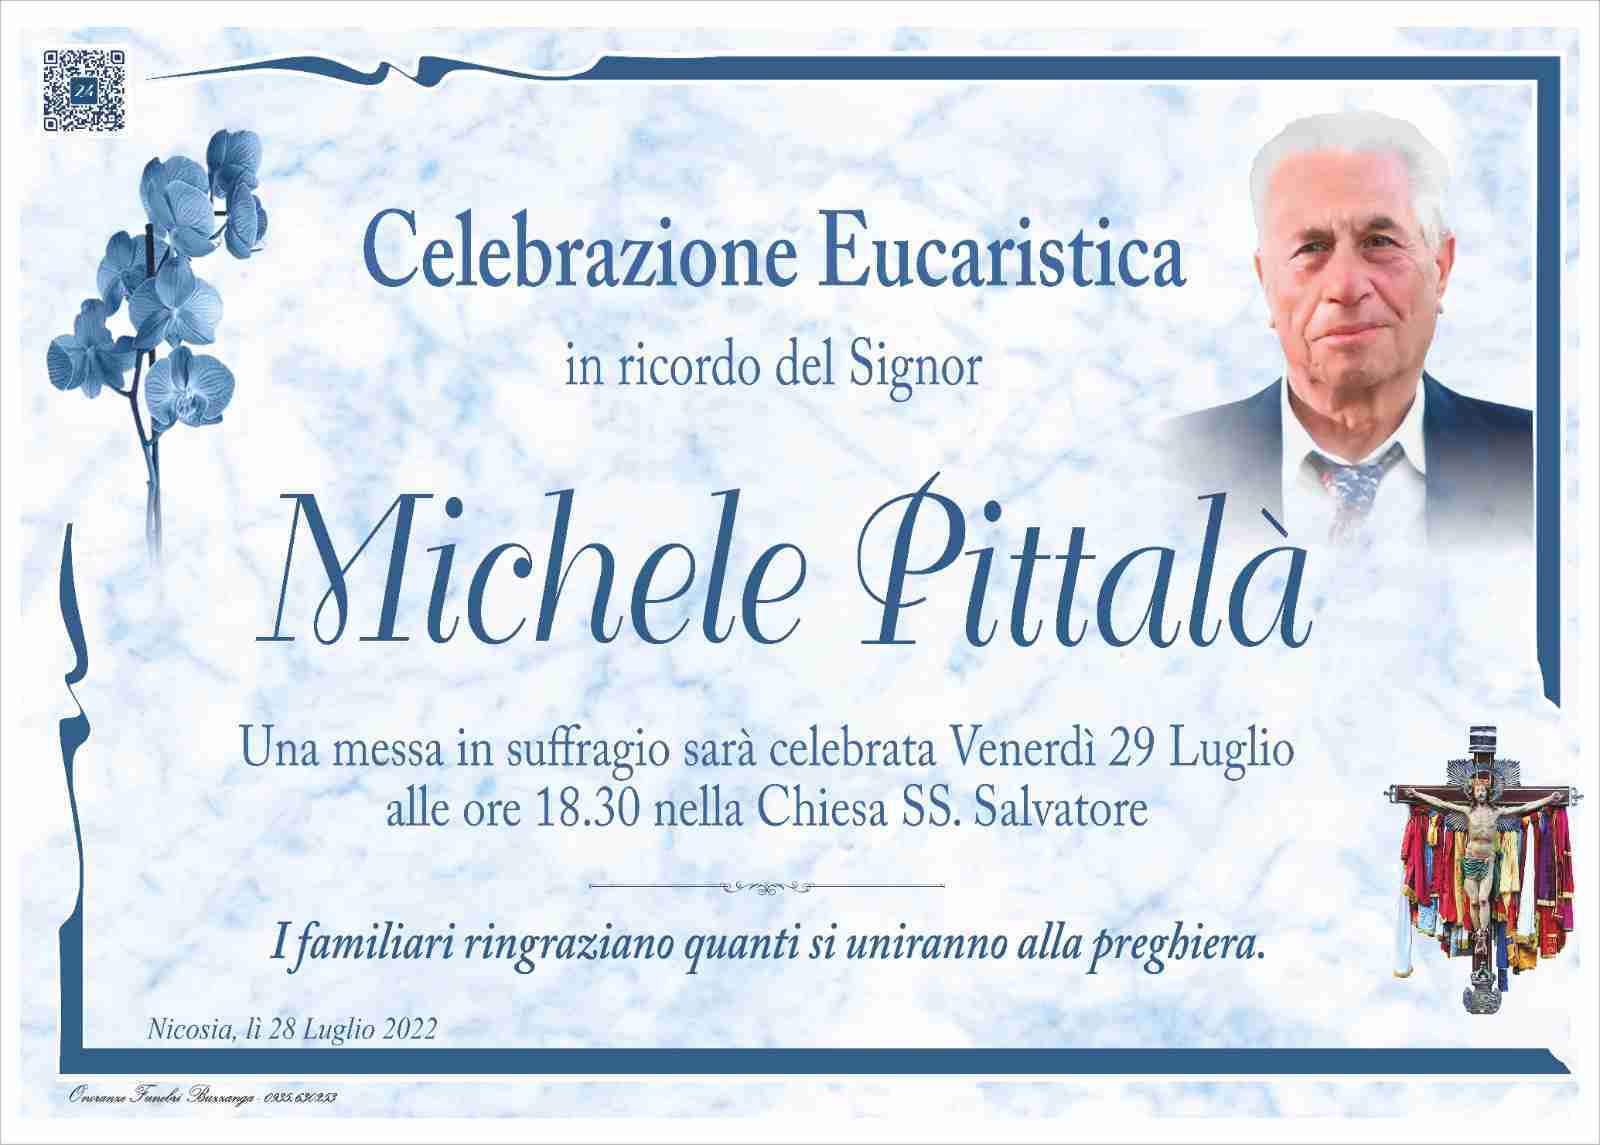 Michele Pittalà